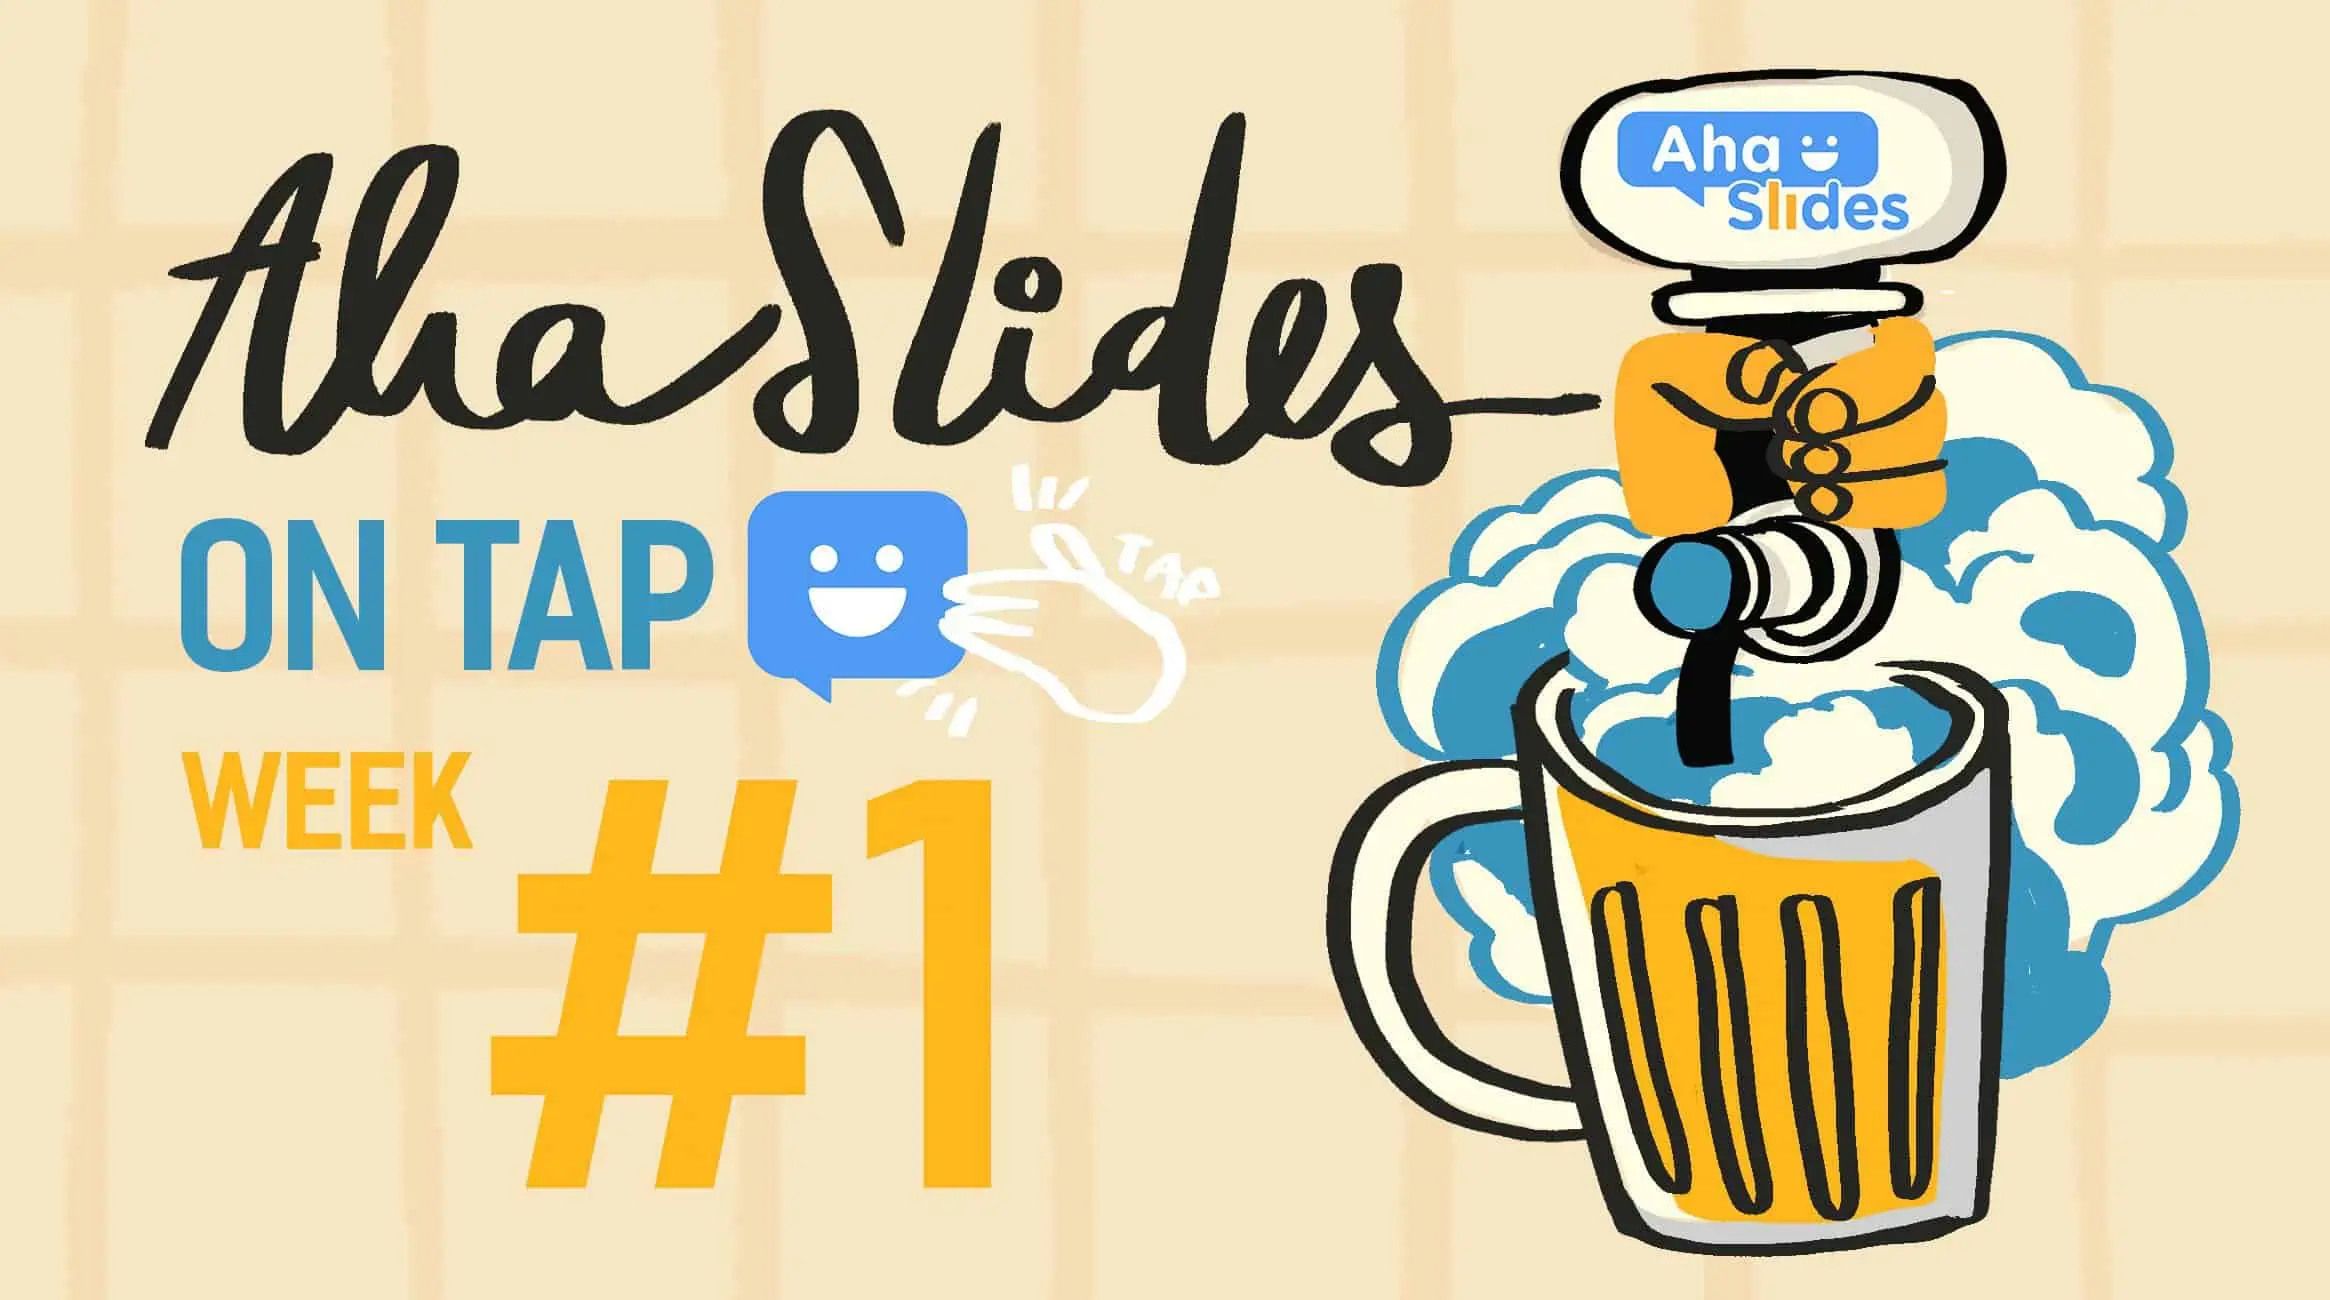 Soalan dan Jawapan Kuiz Pub Lucu: AhaSlides on Tap #1 (Muat Turun Percuma!)